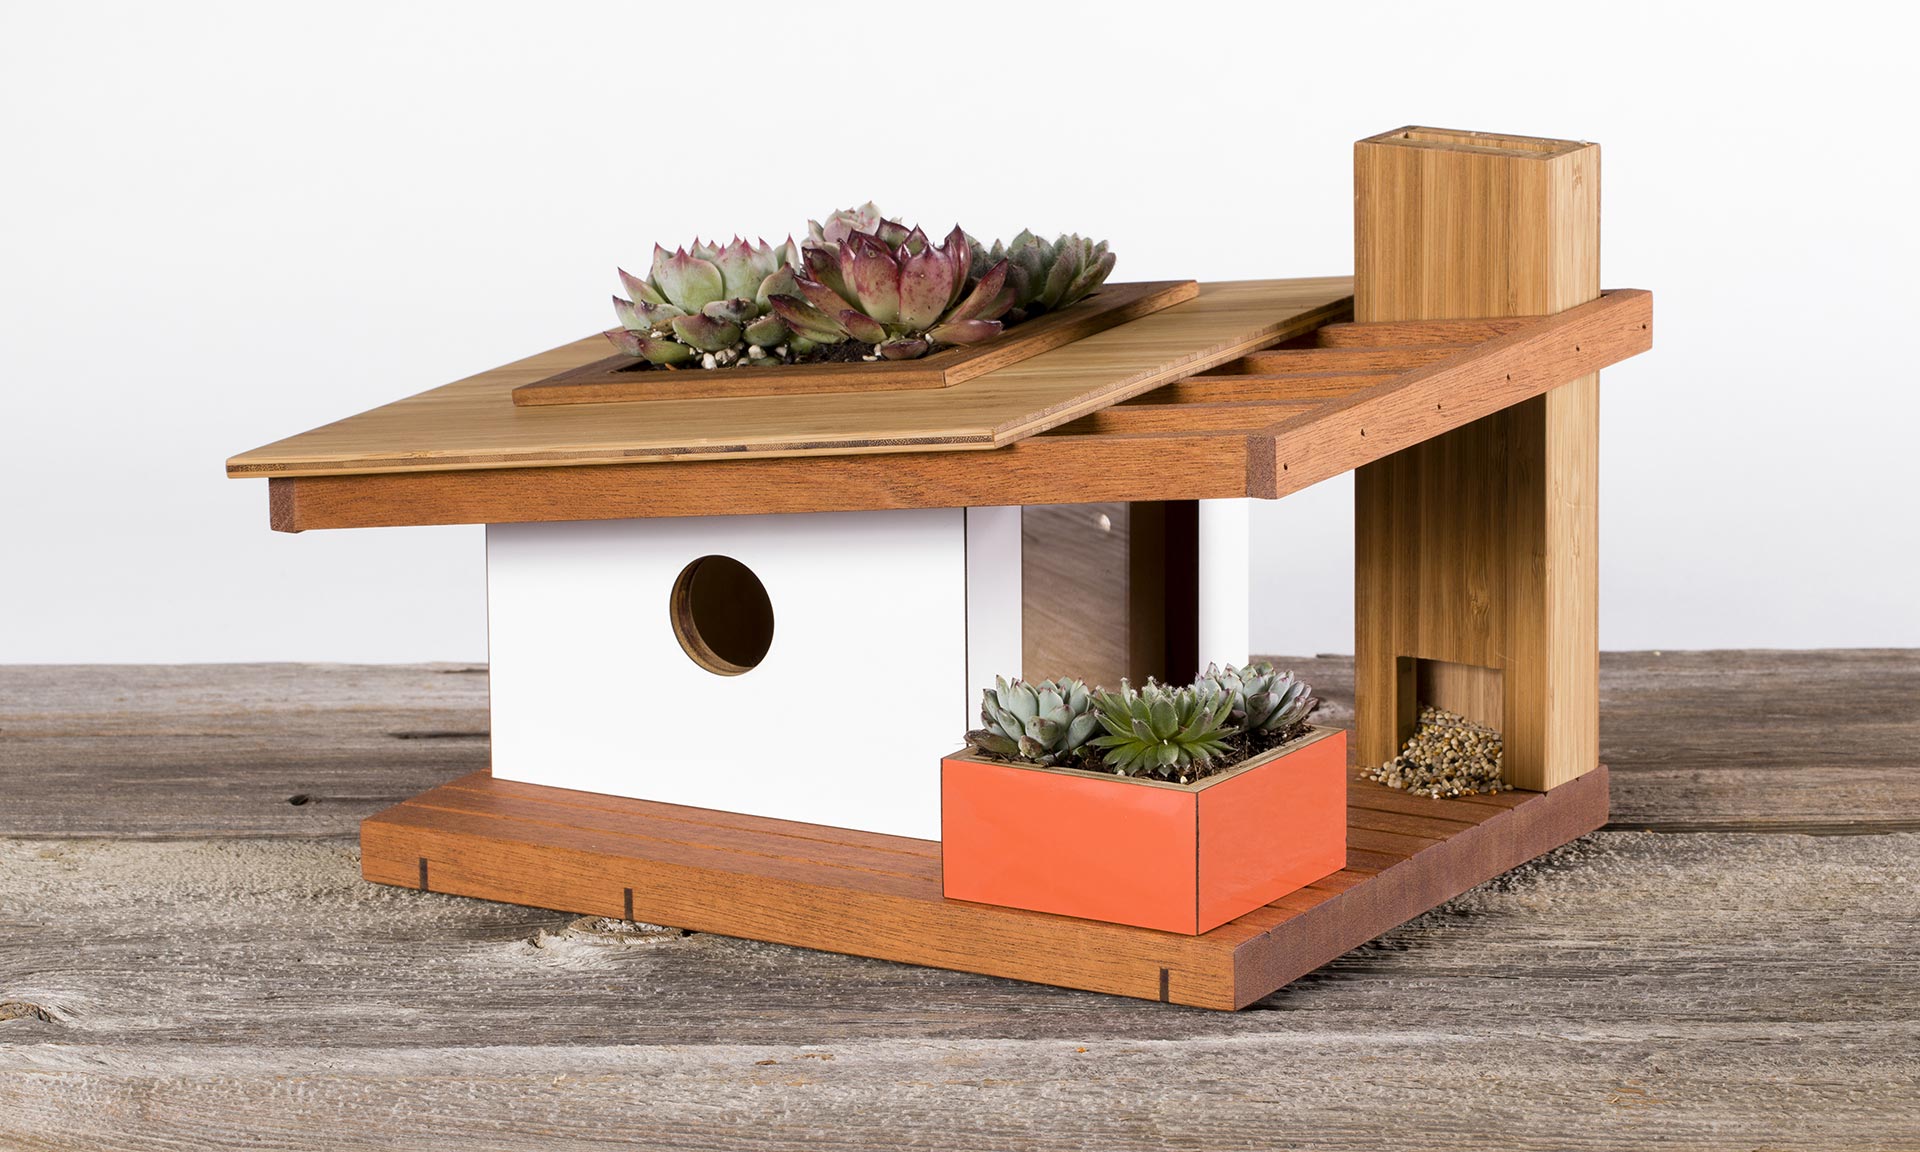 Rodinná firma vyrábí ptačí budky s tvary moderních rodinných domů